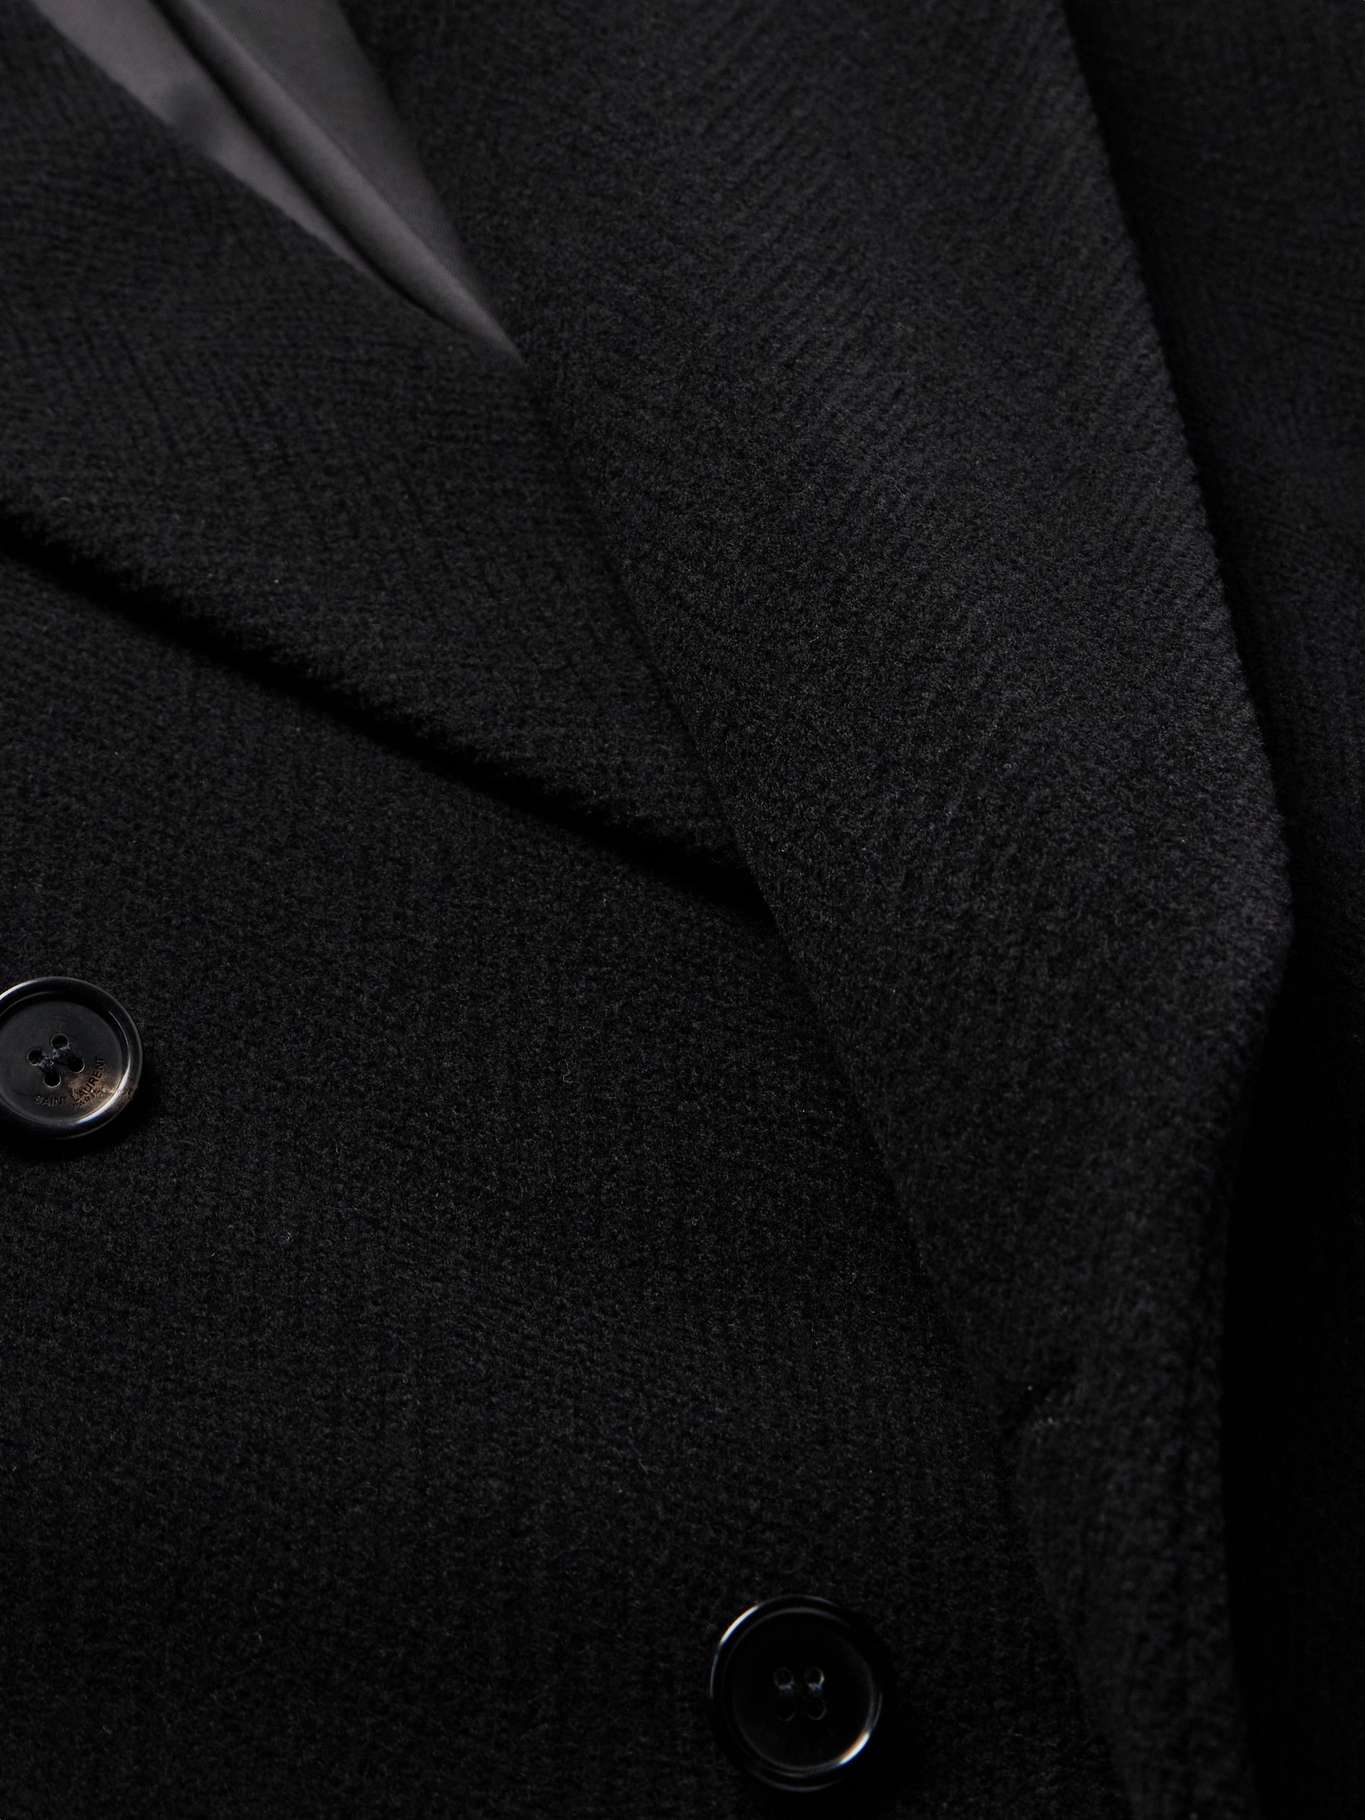 SAINT LAURENT Double-Breasted Herringbone Wool Overcoat for Men | MR PORTER